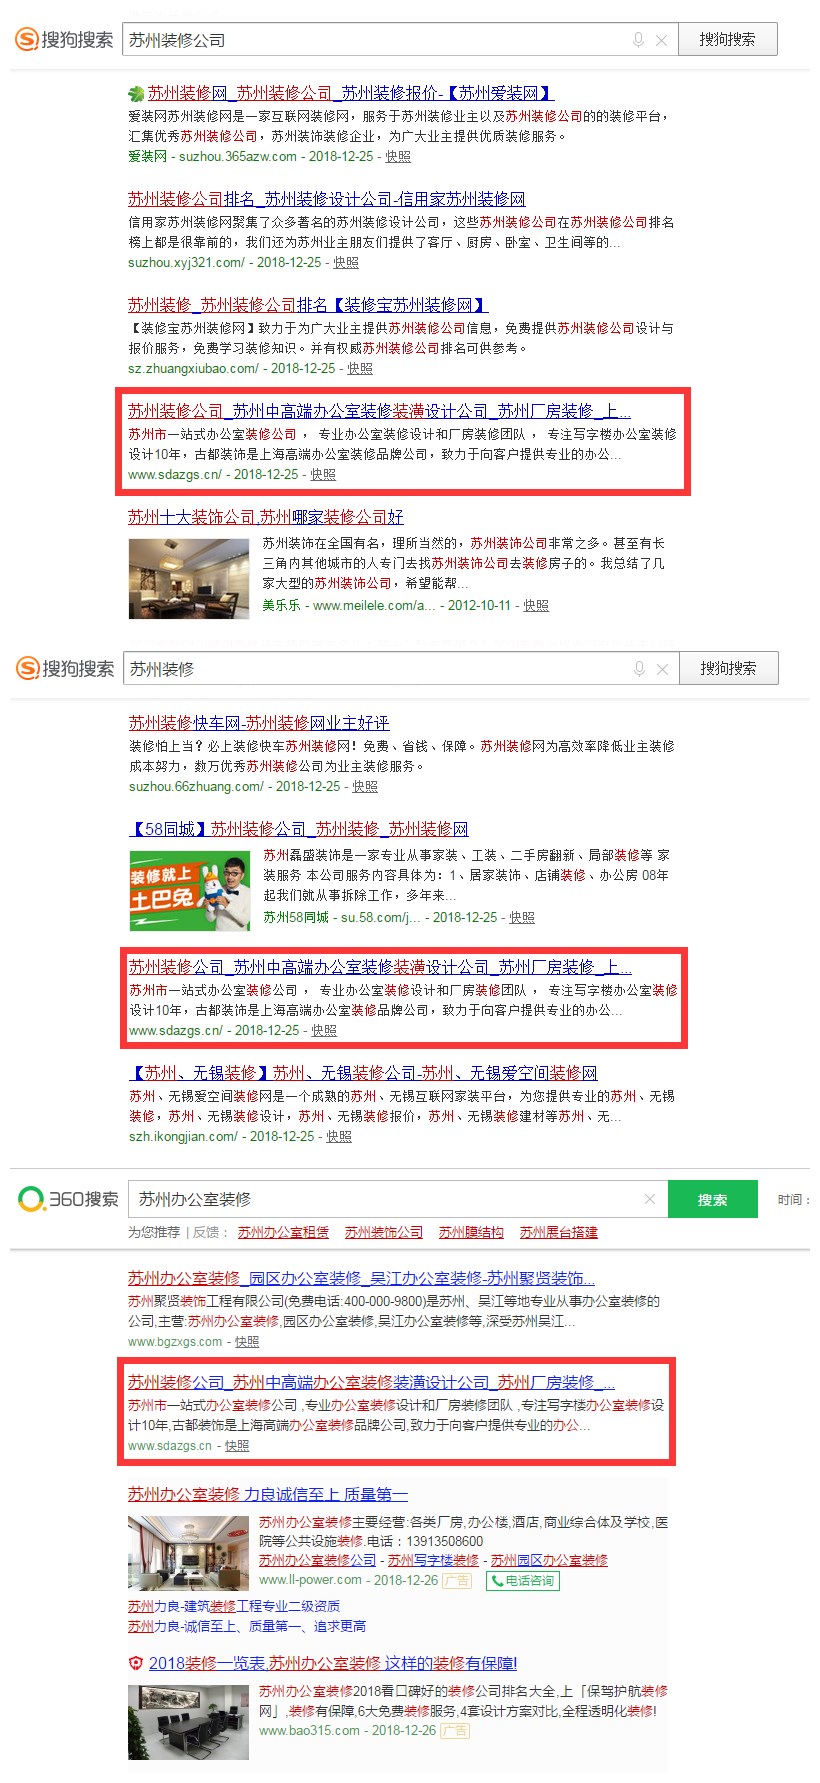 贵州网站运营公司：古都装饰苏州公司网站（www.sdazgs.cn）(图4)